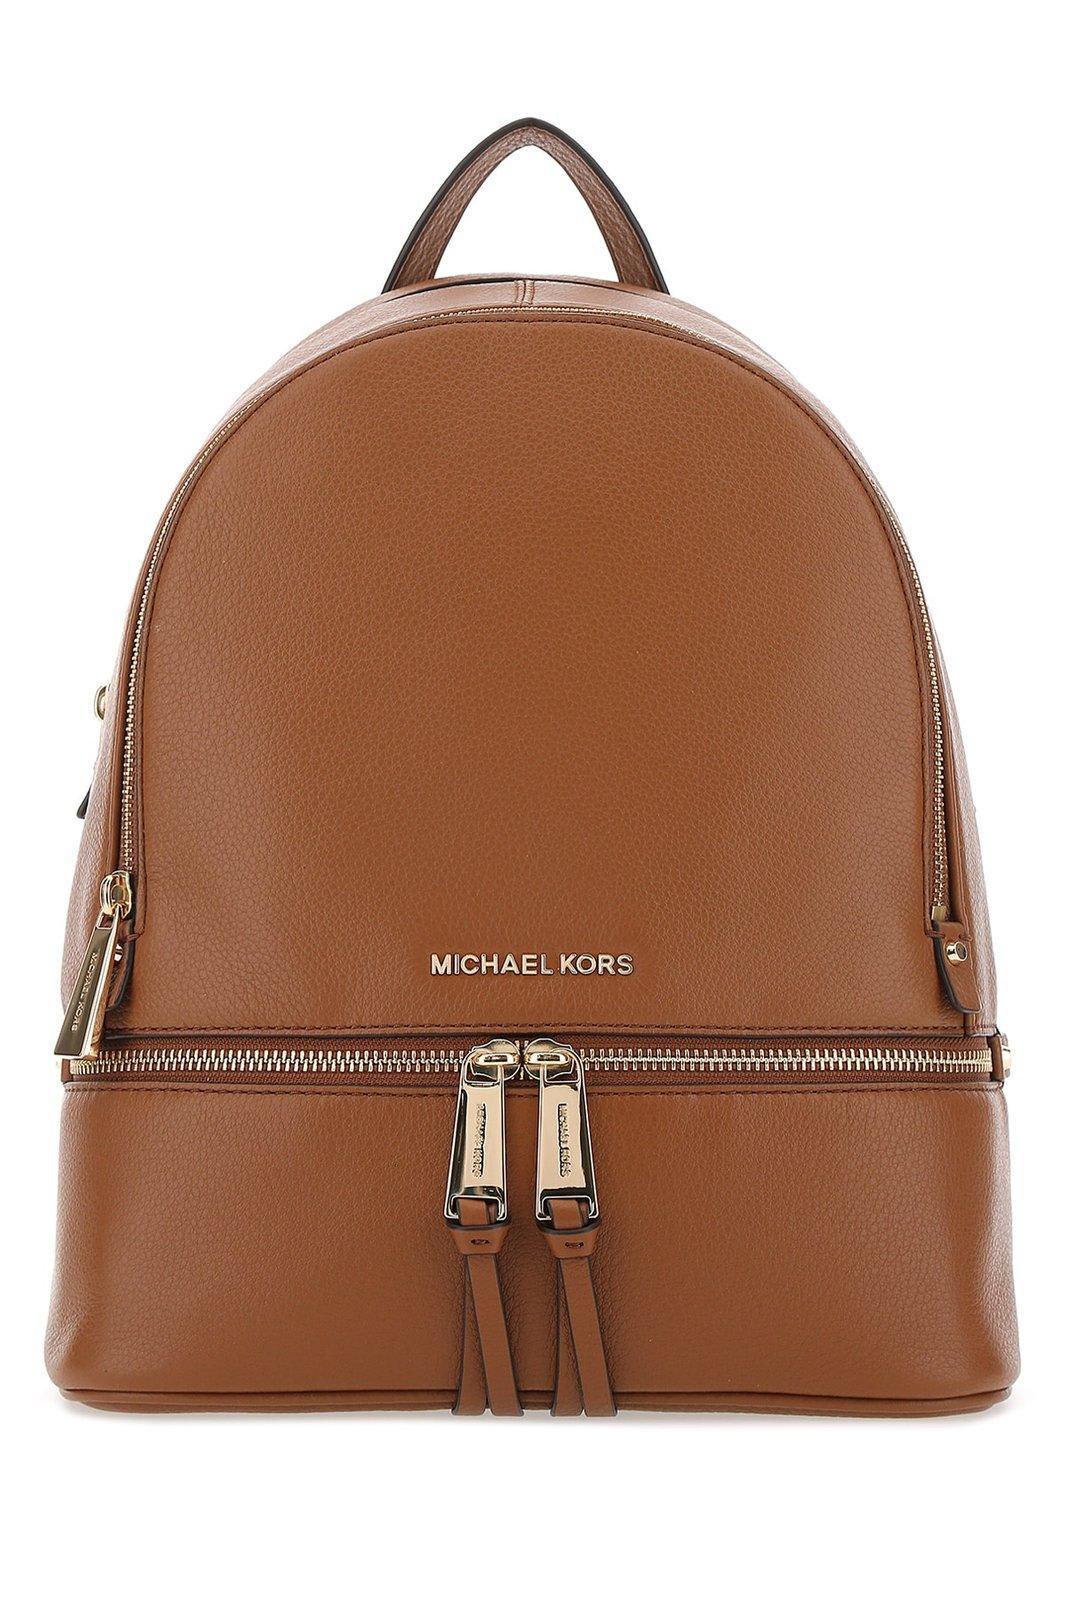 Michael Kors Rhea Medium Backpack in Brown | Lyst